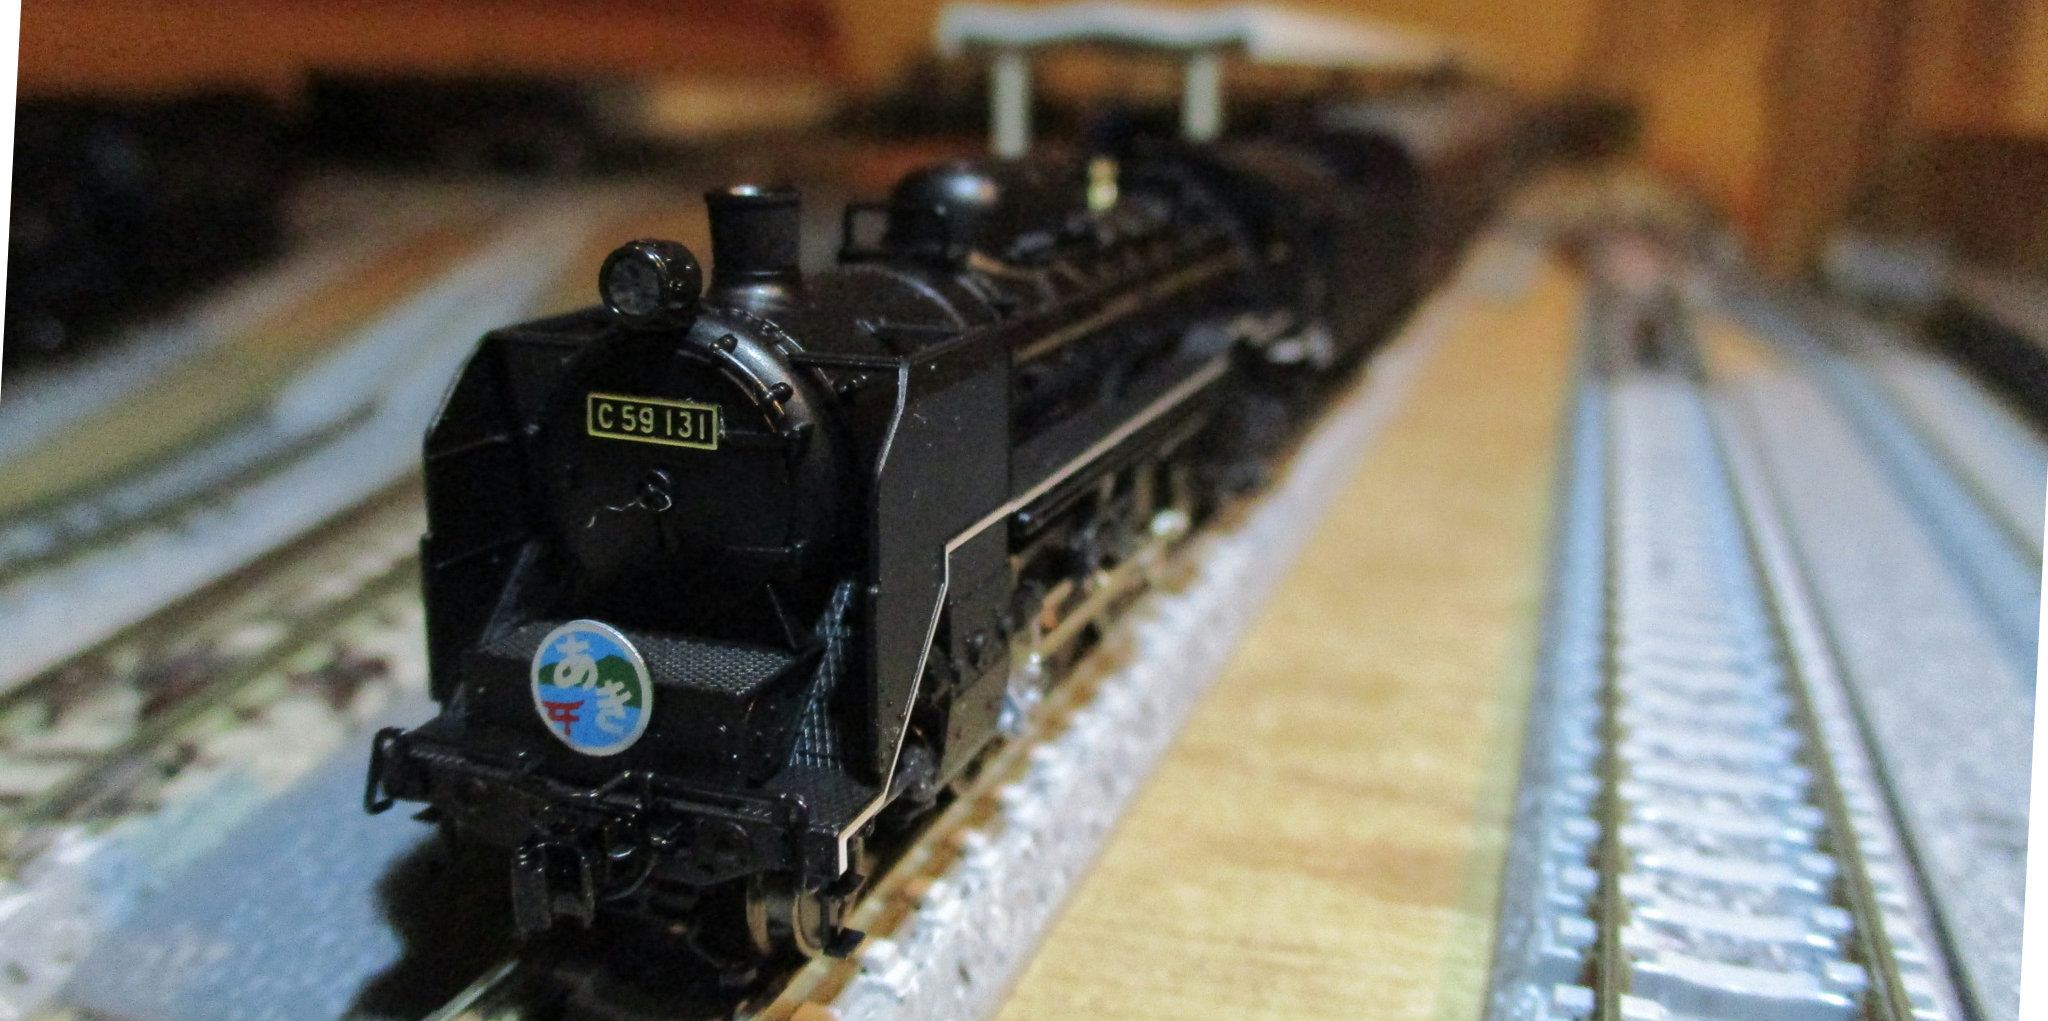 鉄道模型再収集開始 #159 KATO C59 戦後型・呉線 | 新・キラワケブログ